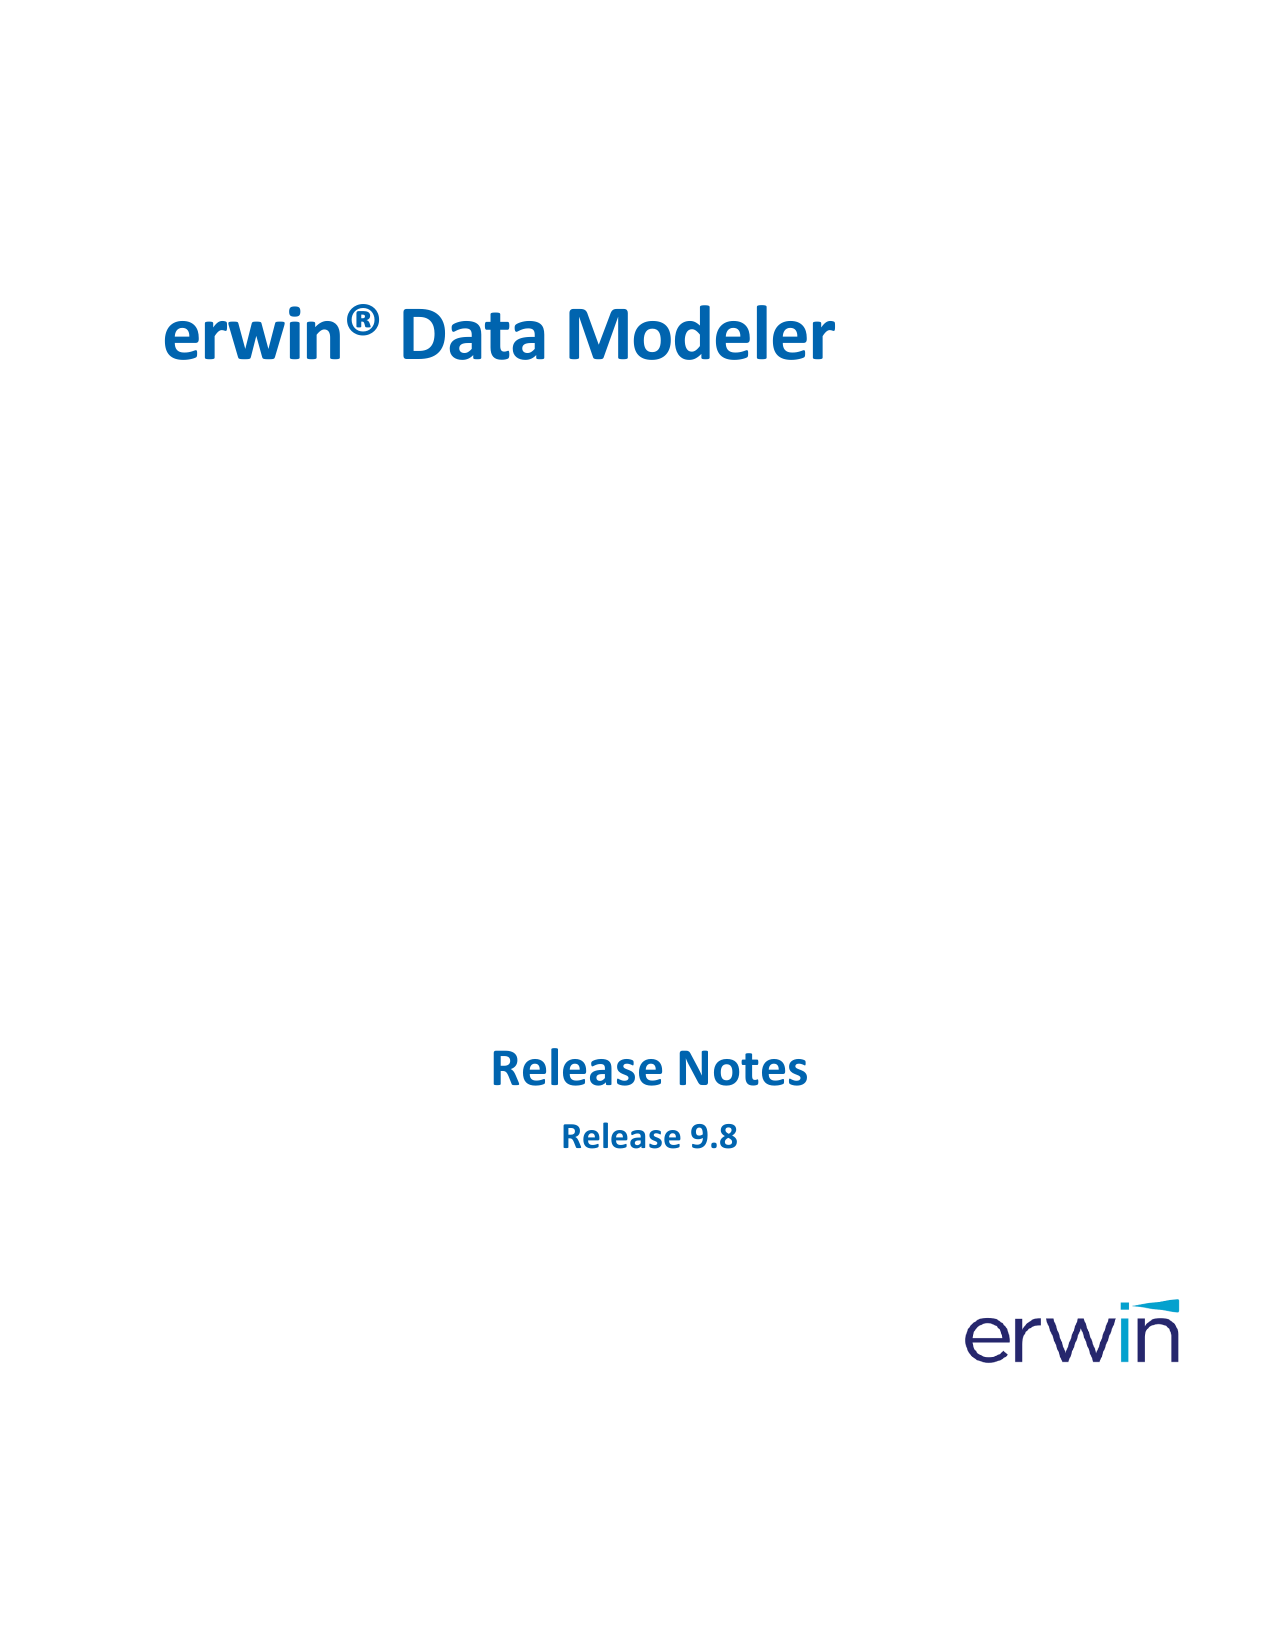 object explorer on erwin data modeler